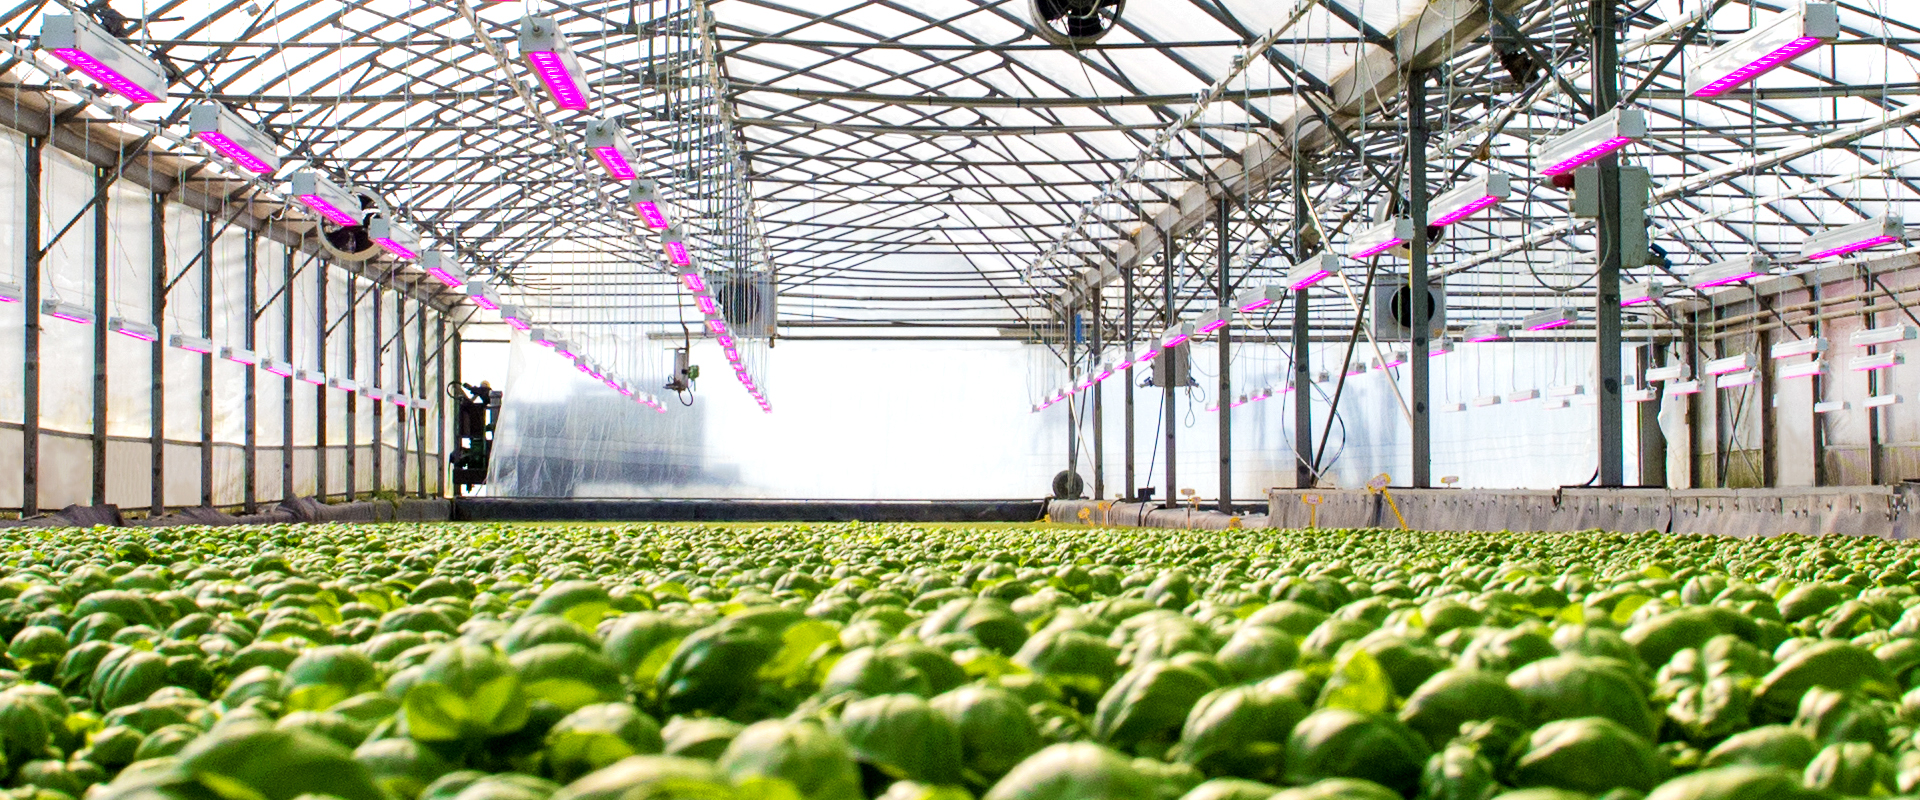 Sistemi di illuminazione con tecnologia LED grow light per la crescita delle piante.